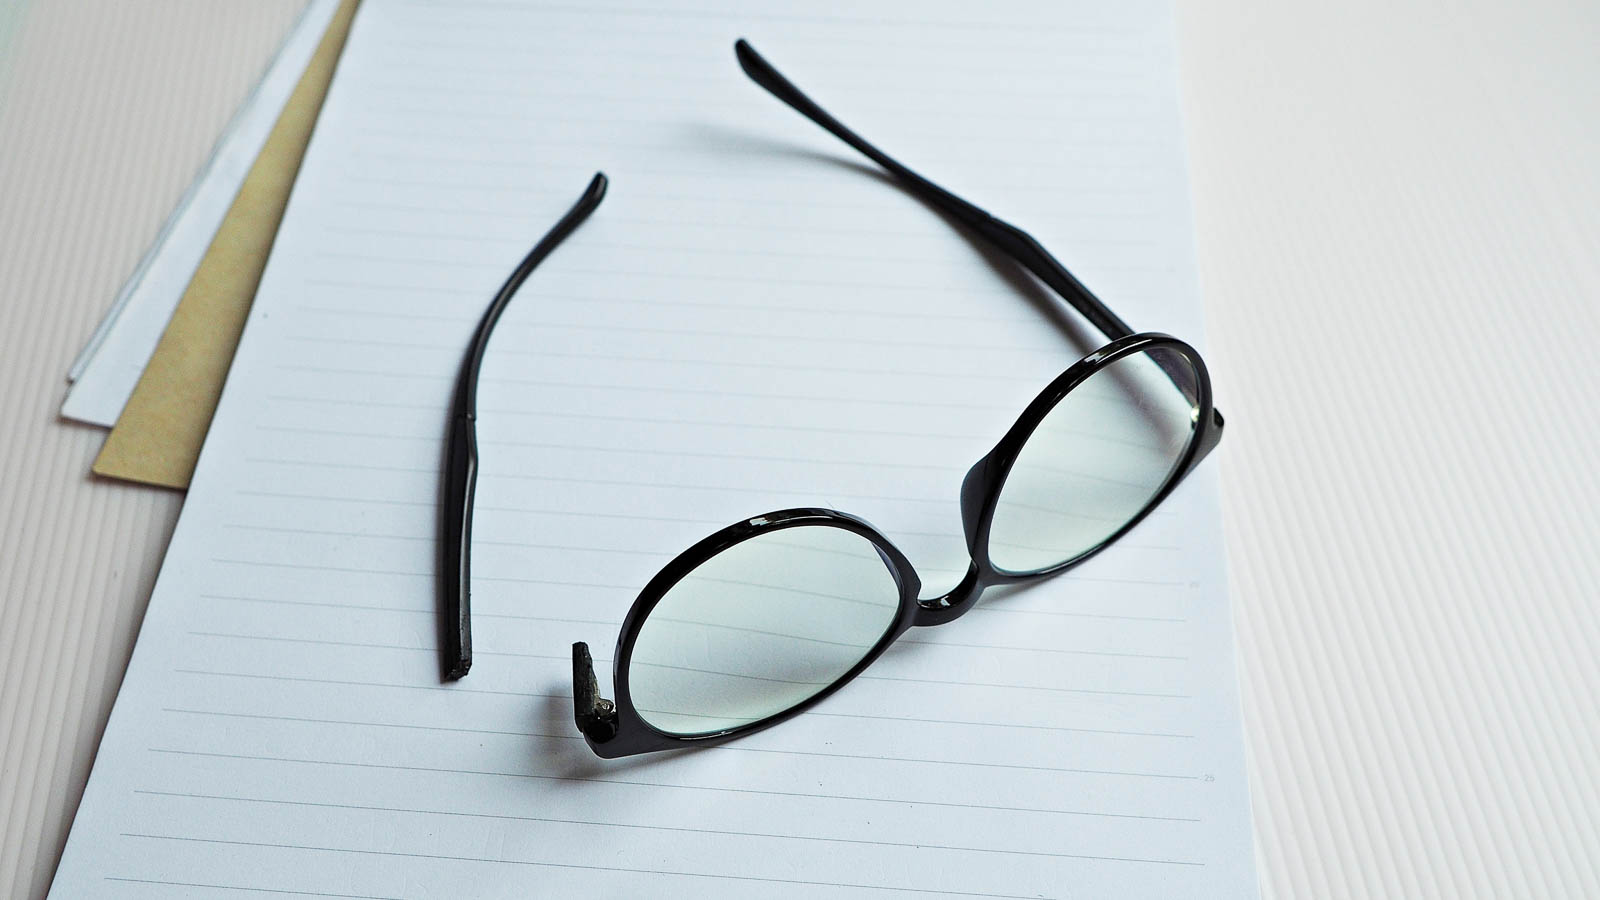 Dækning briller - Bliv dækket med indboforsikring | Runa Forsikring